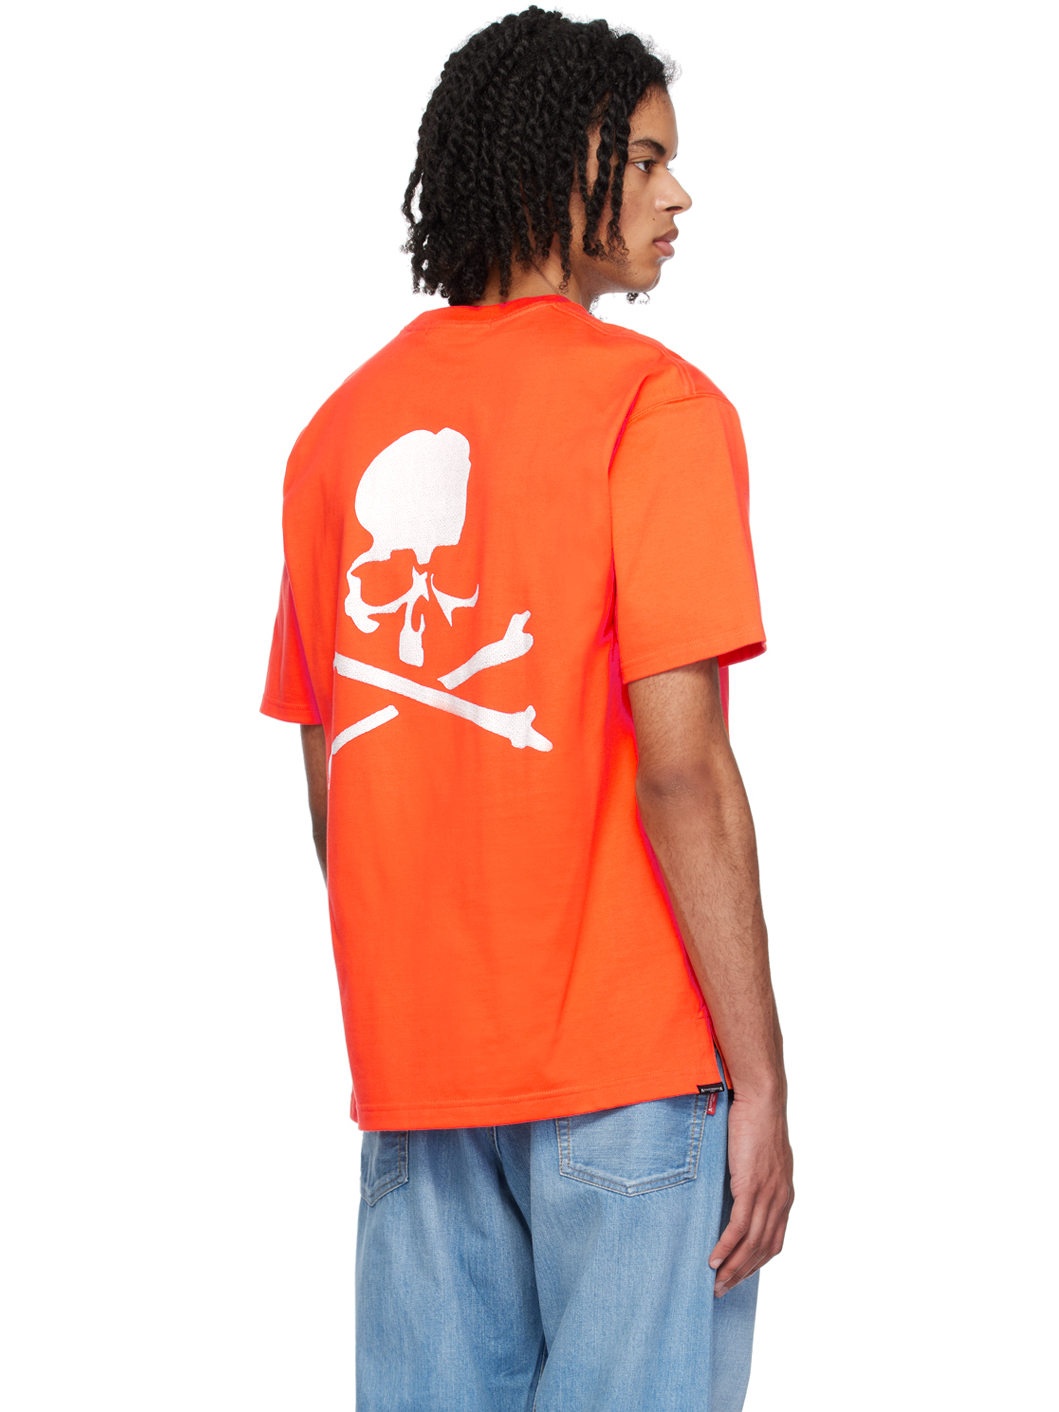 Orange 3D Skull T-Shirt - 3